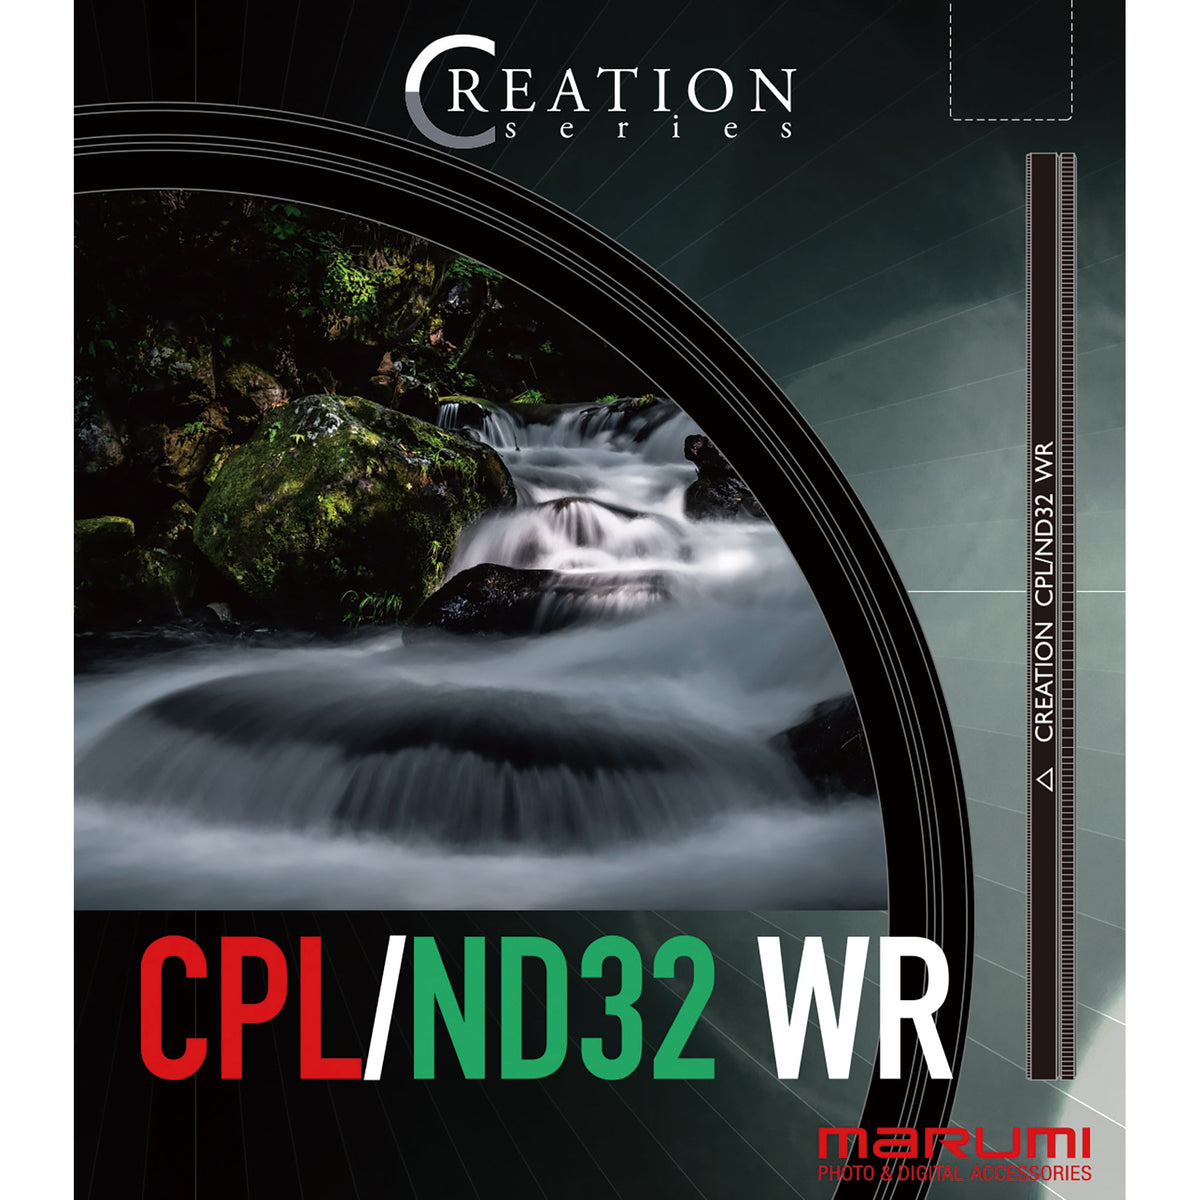 CREATION CPL/ND32 WR